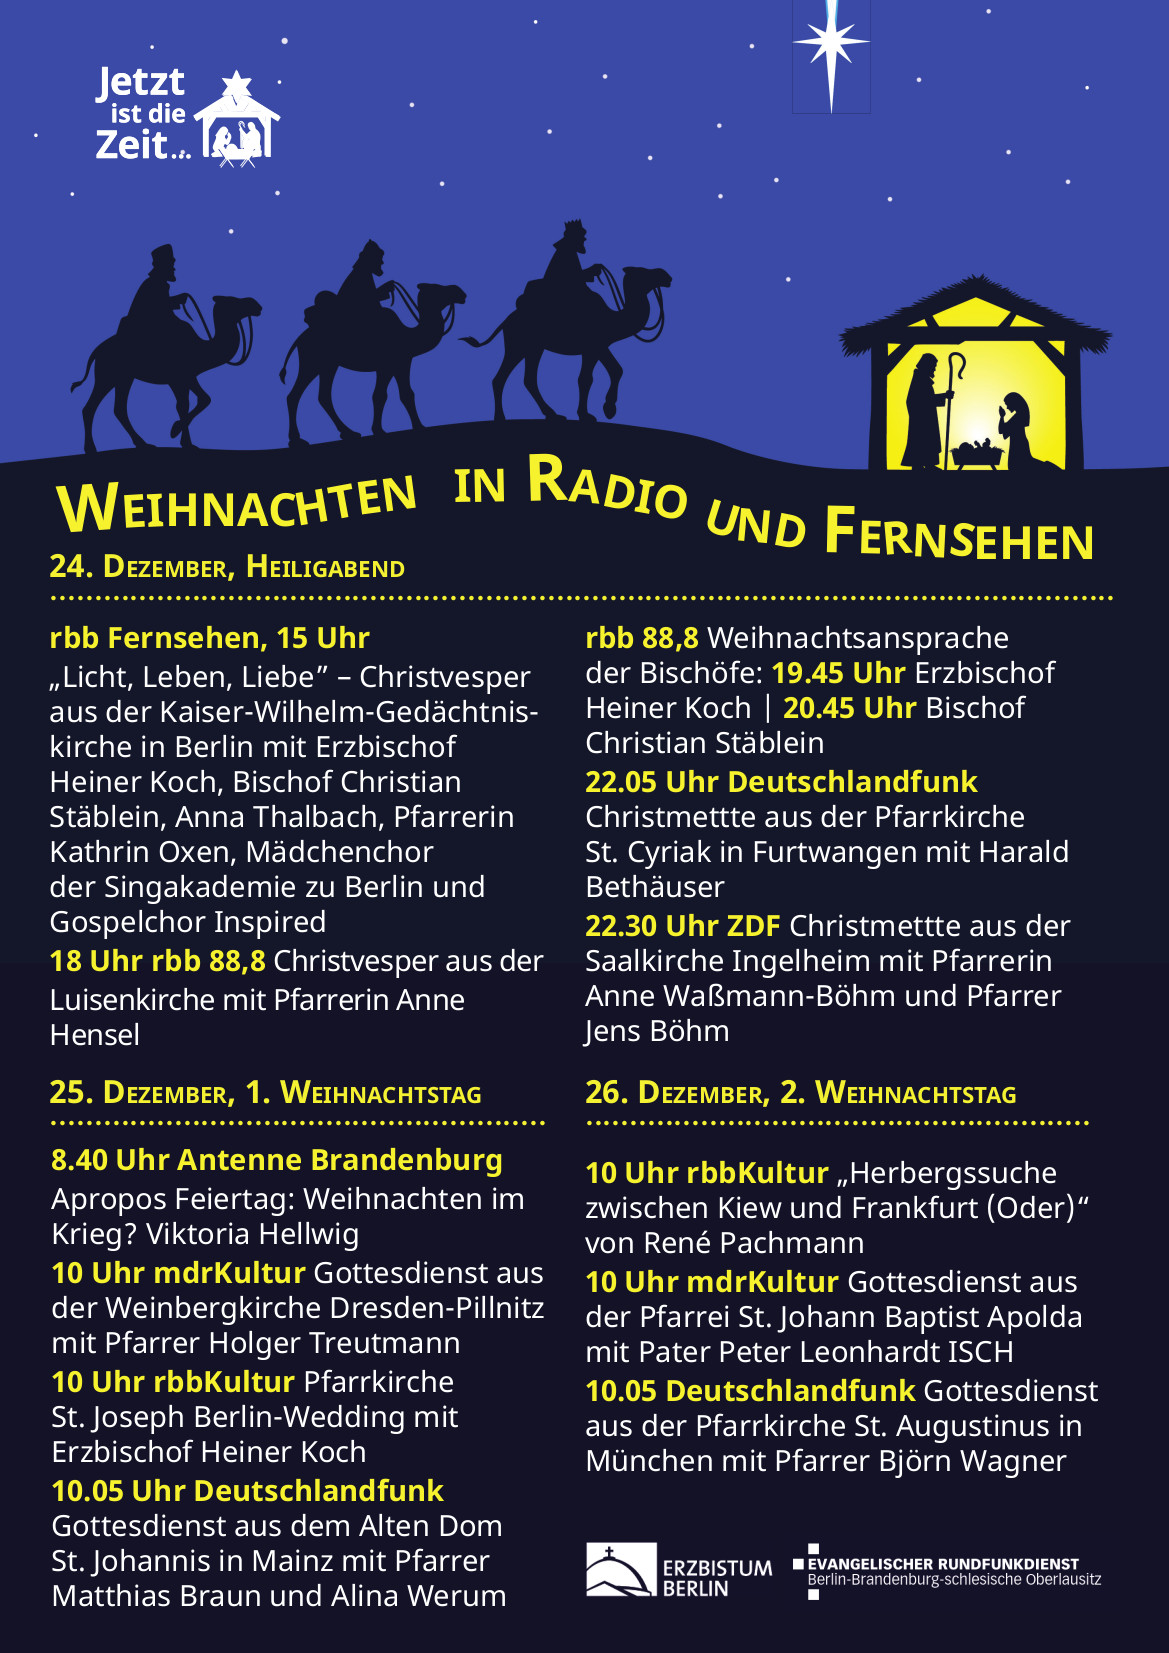 Weihnachten 2022 in Radio und Fernsehen